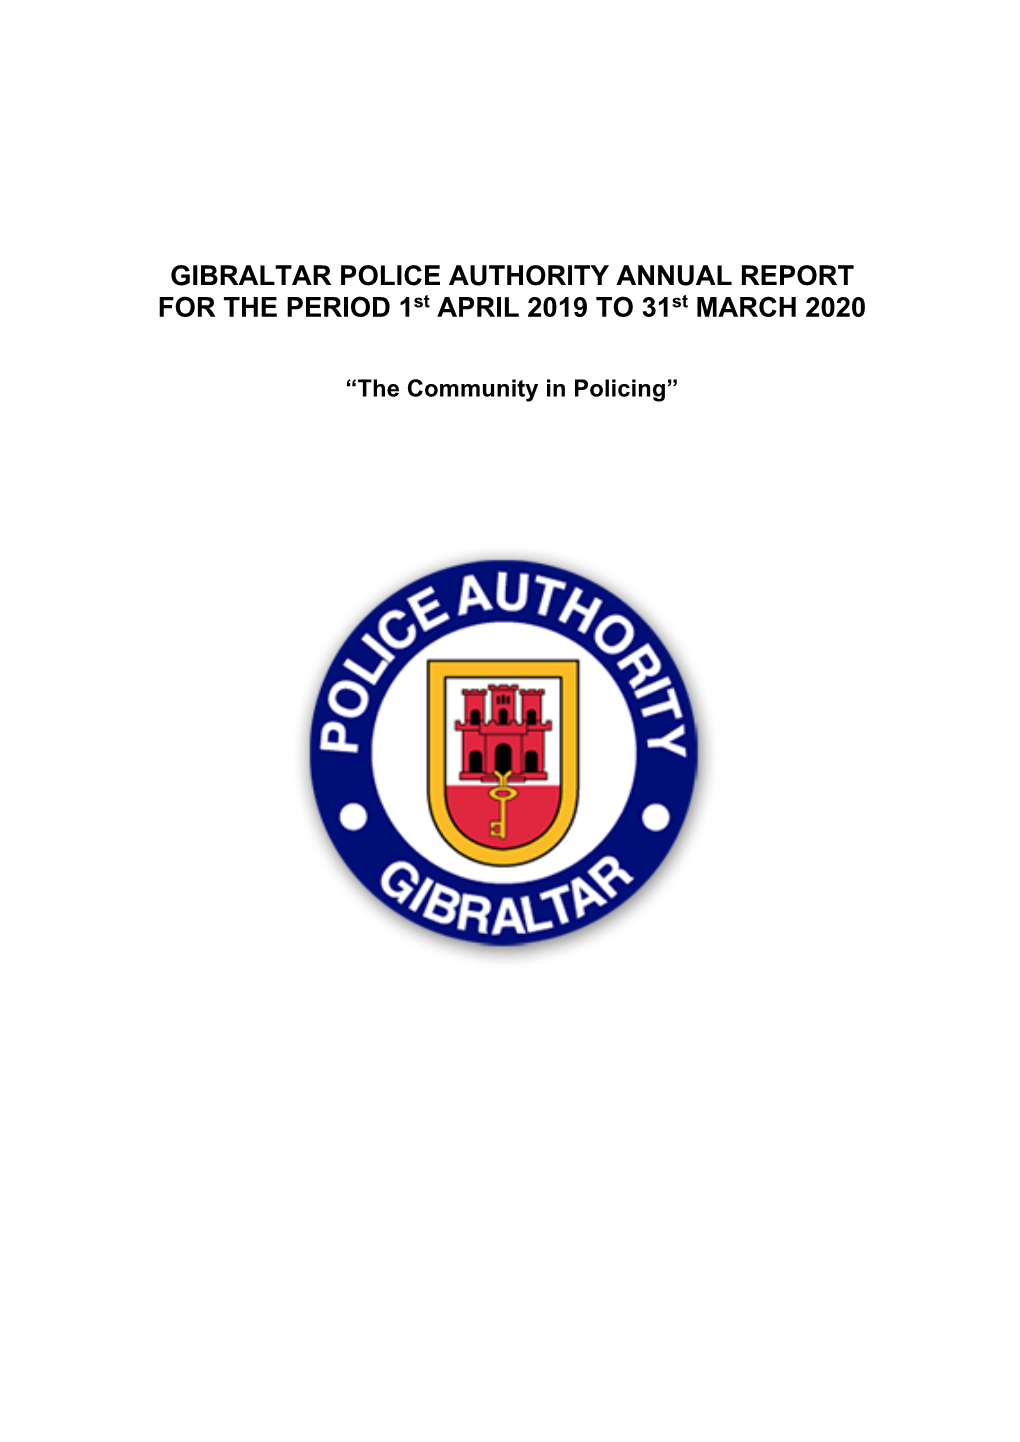 GPA Annual Report 2019-2020